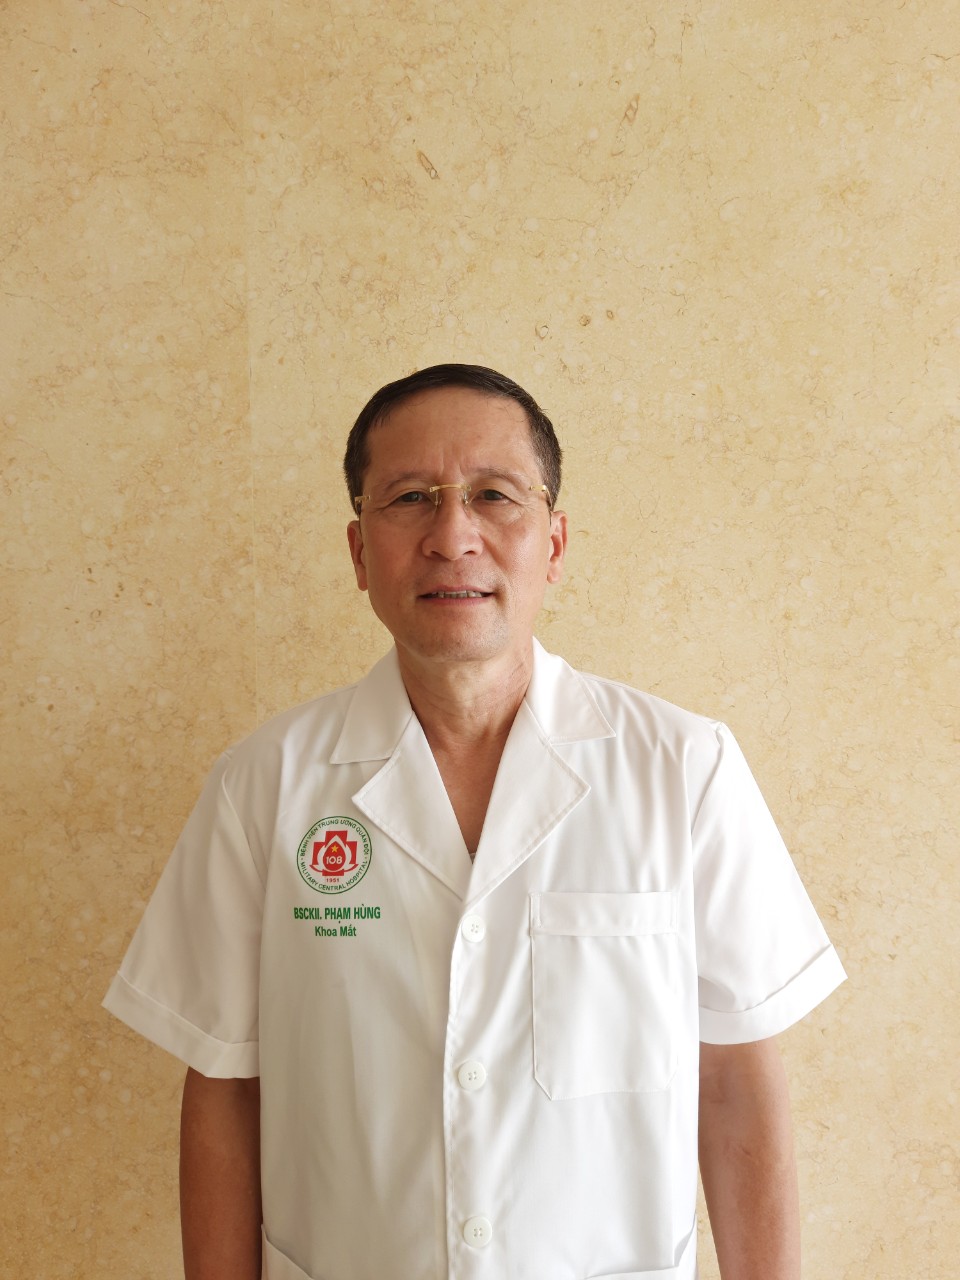 Bác sĩ chuyên khoa II. Phạm Hùng